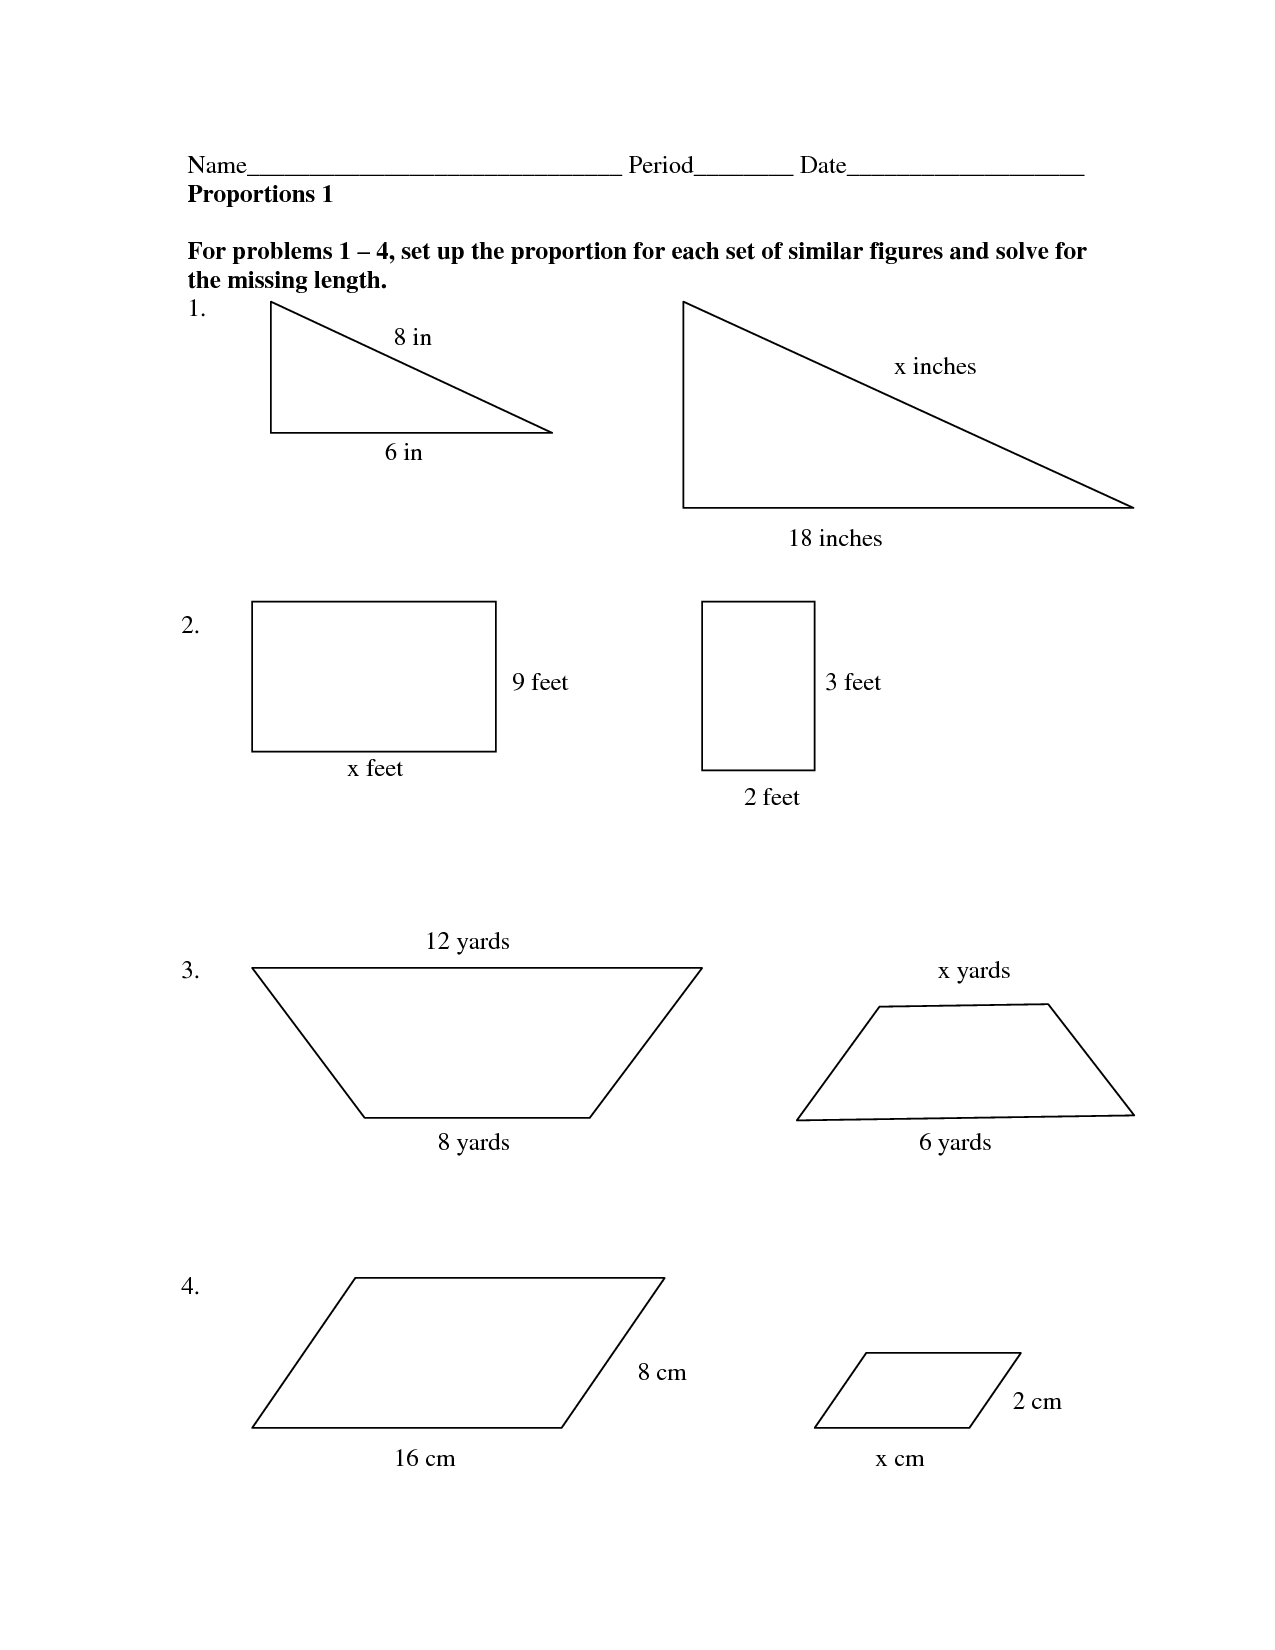 13-best-images-of-similar-figures-worksheet-similar-triangles-and-polygons-worksheet-similar